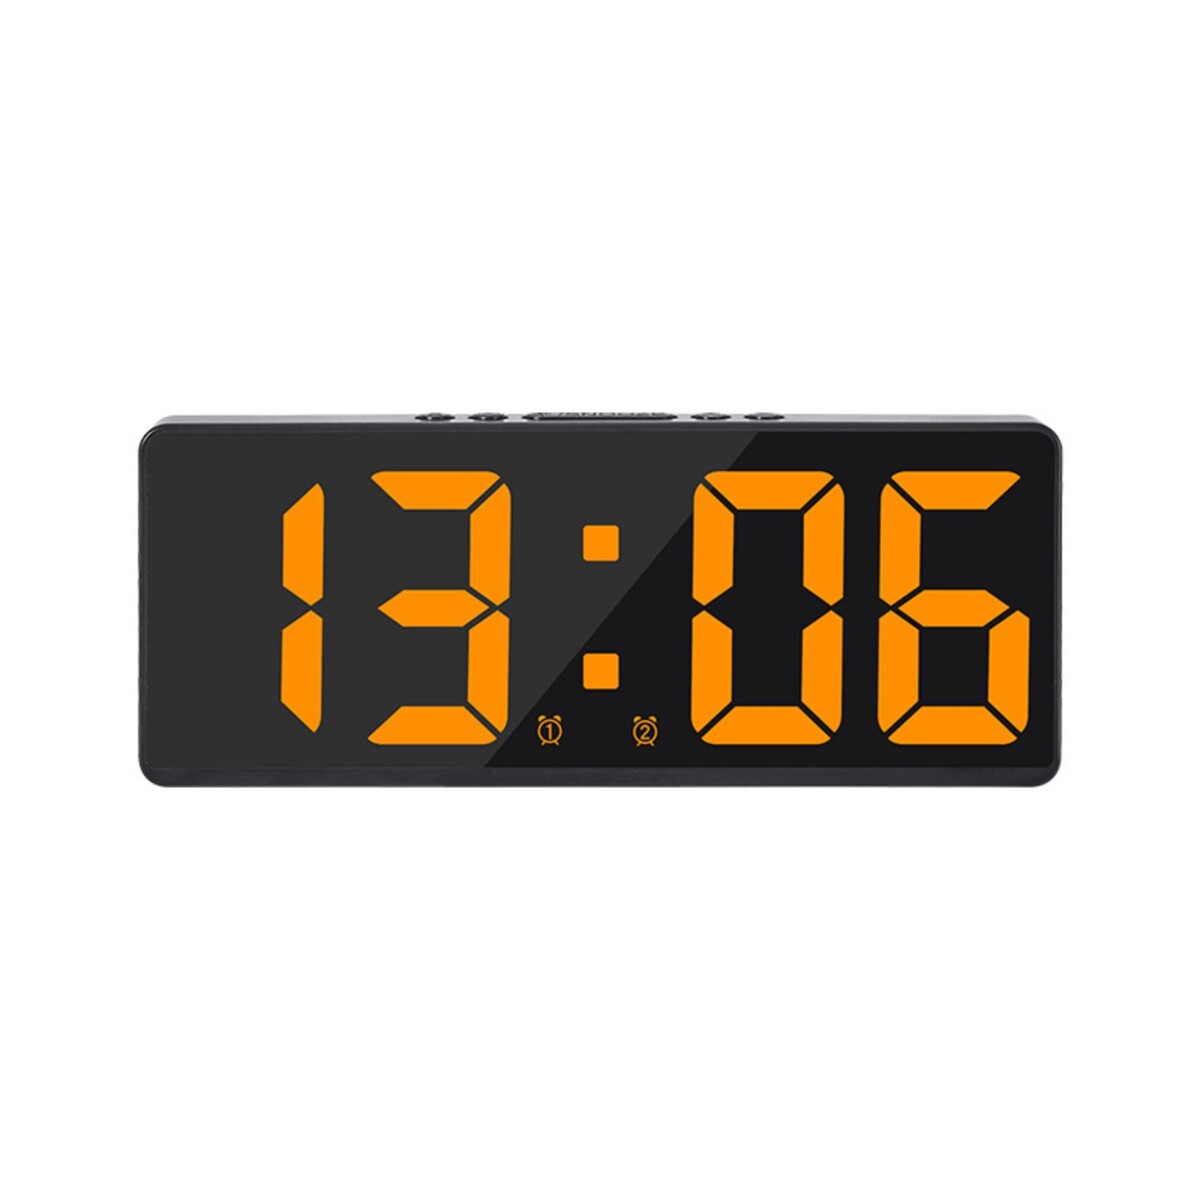 Часы - будильник электронные настольные с термометром, календарем, 15 х 6.3 см, ааа, usb часы электронные настенные настольные с будильником 15 x 36 x 3 см usb